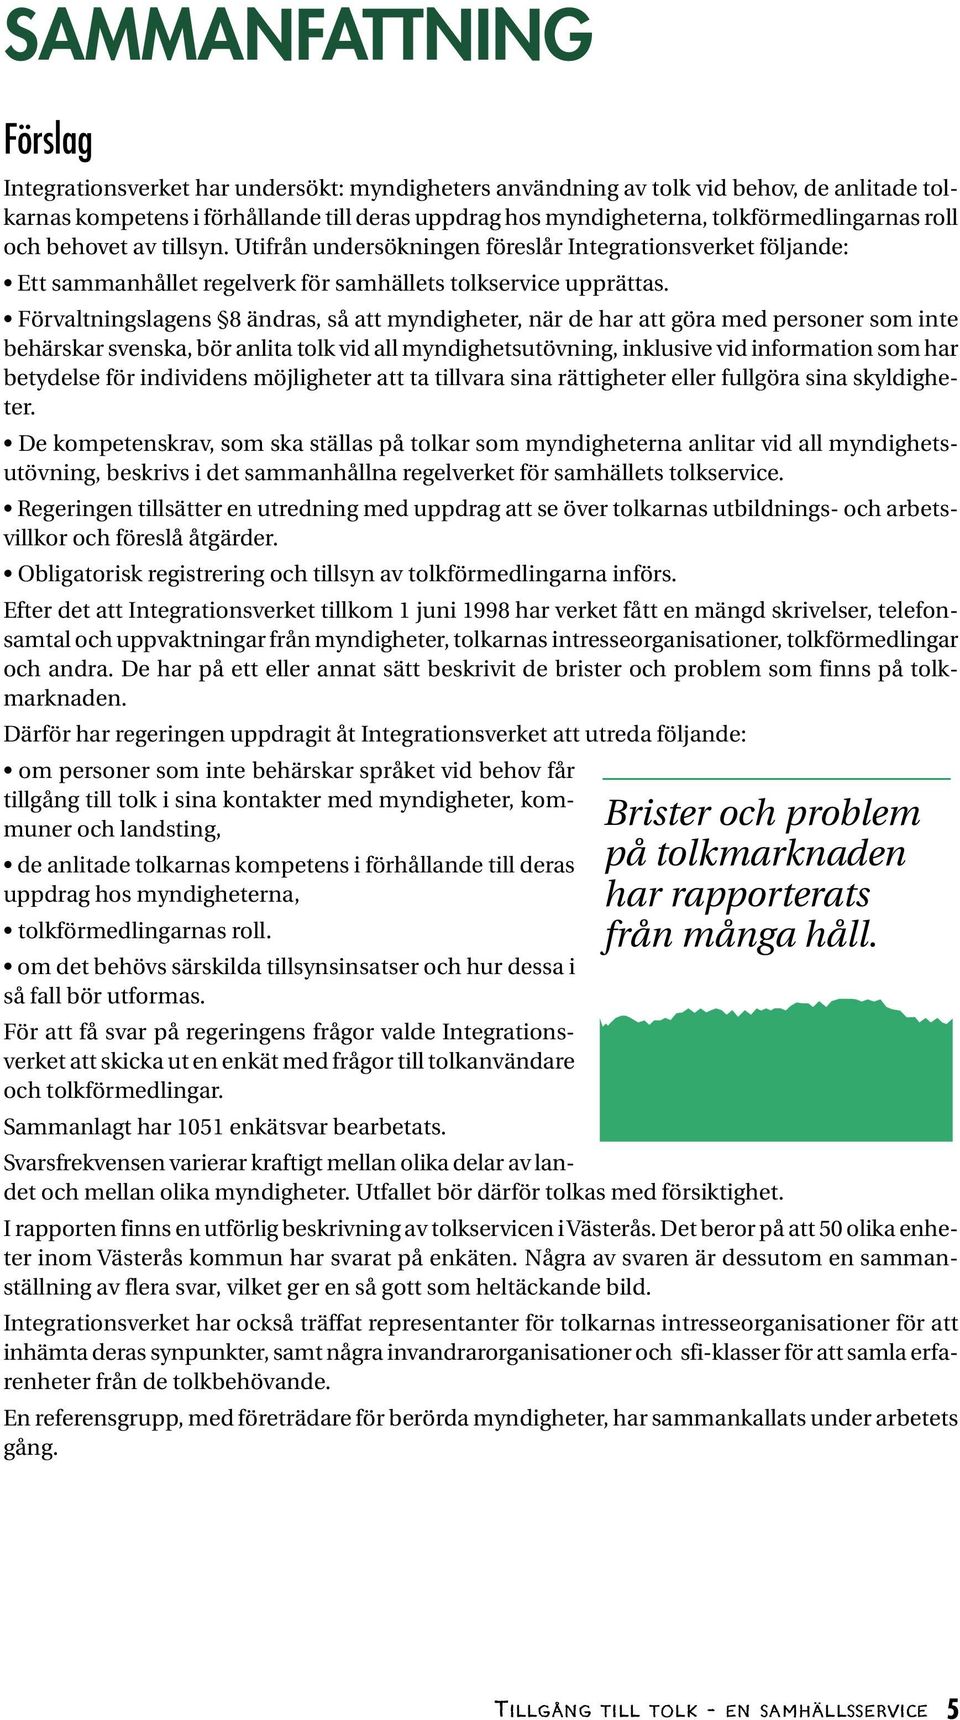 Förvaltningslagens 8 ändras, så att myndigheter, när de har att göra med personer som inte behärskar svenska, bör anlita tolk vid all myndighetsutövning, inklusive vid information som har betydelse